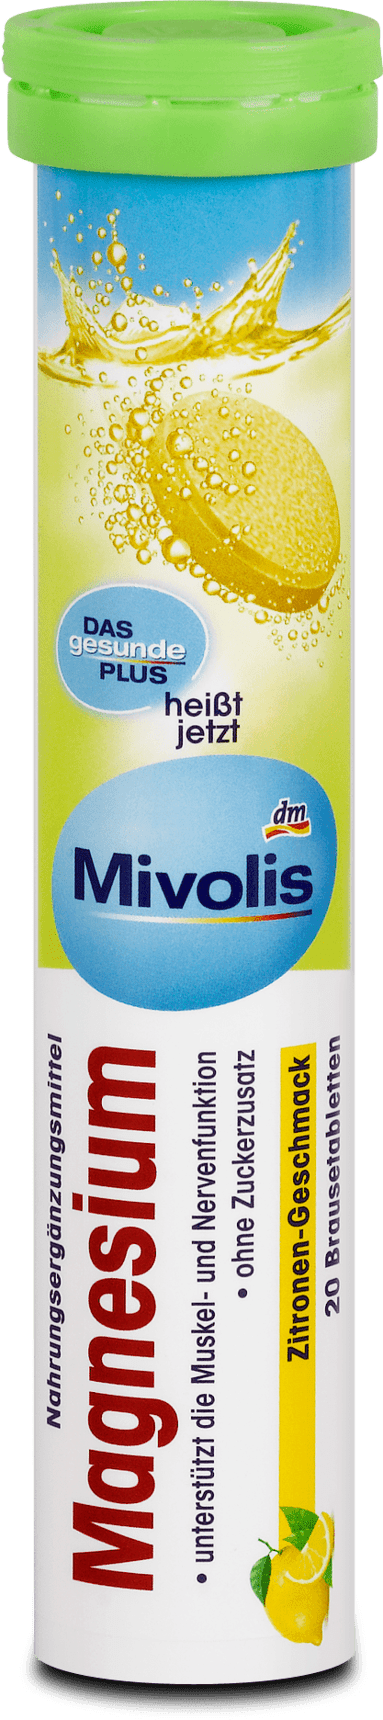 Mivolis Magnesium + Vitamin C + B6 + B12 Review